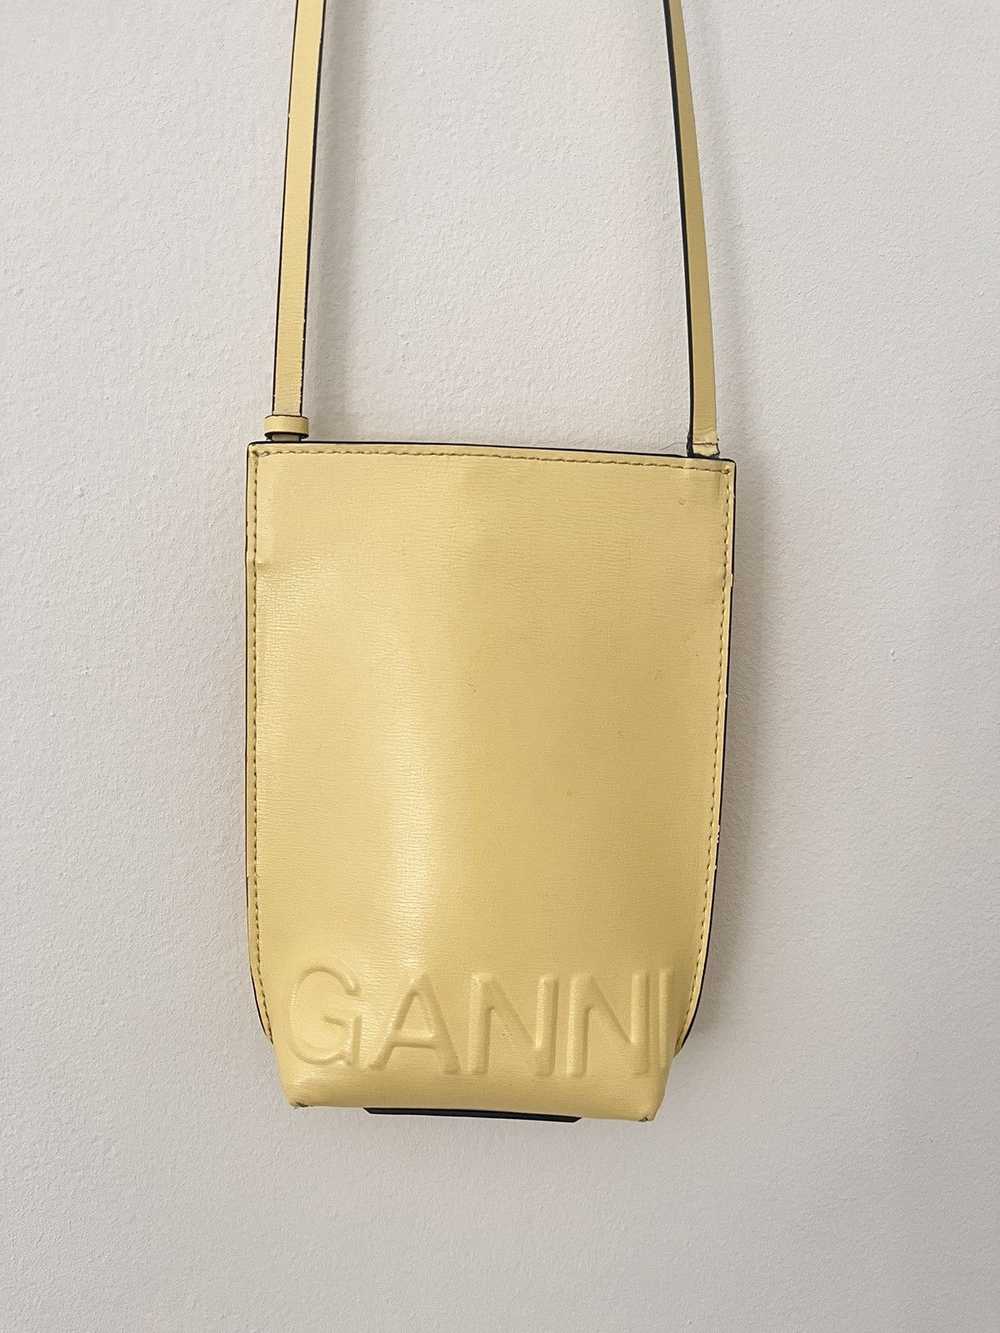 Ganni Ganni side bag - image 2